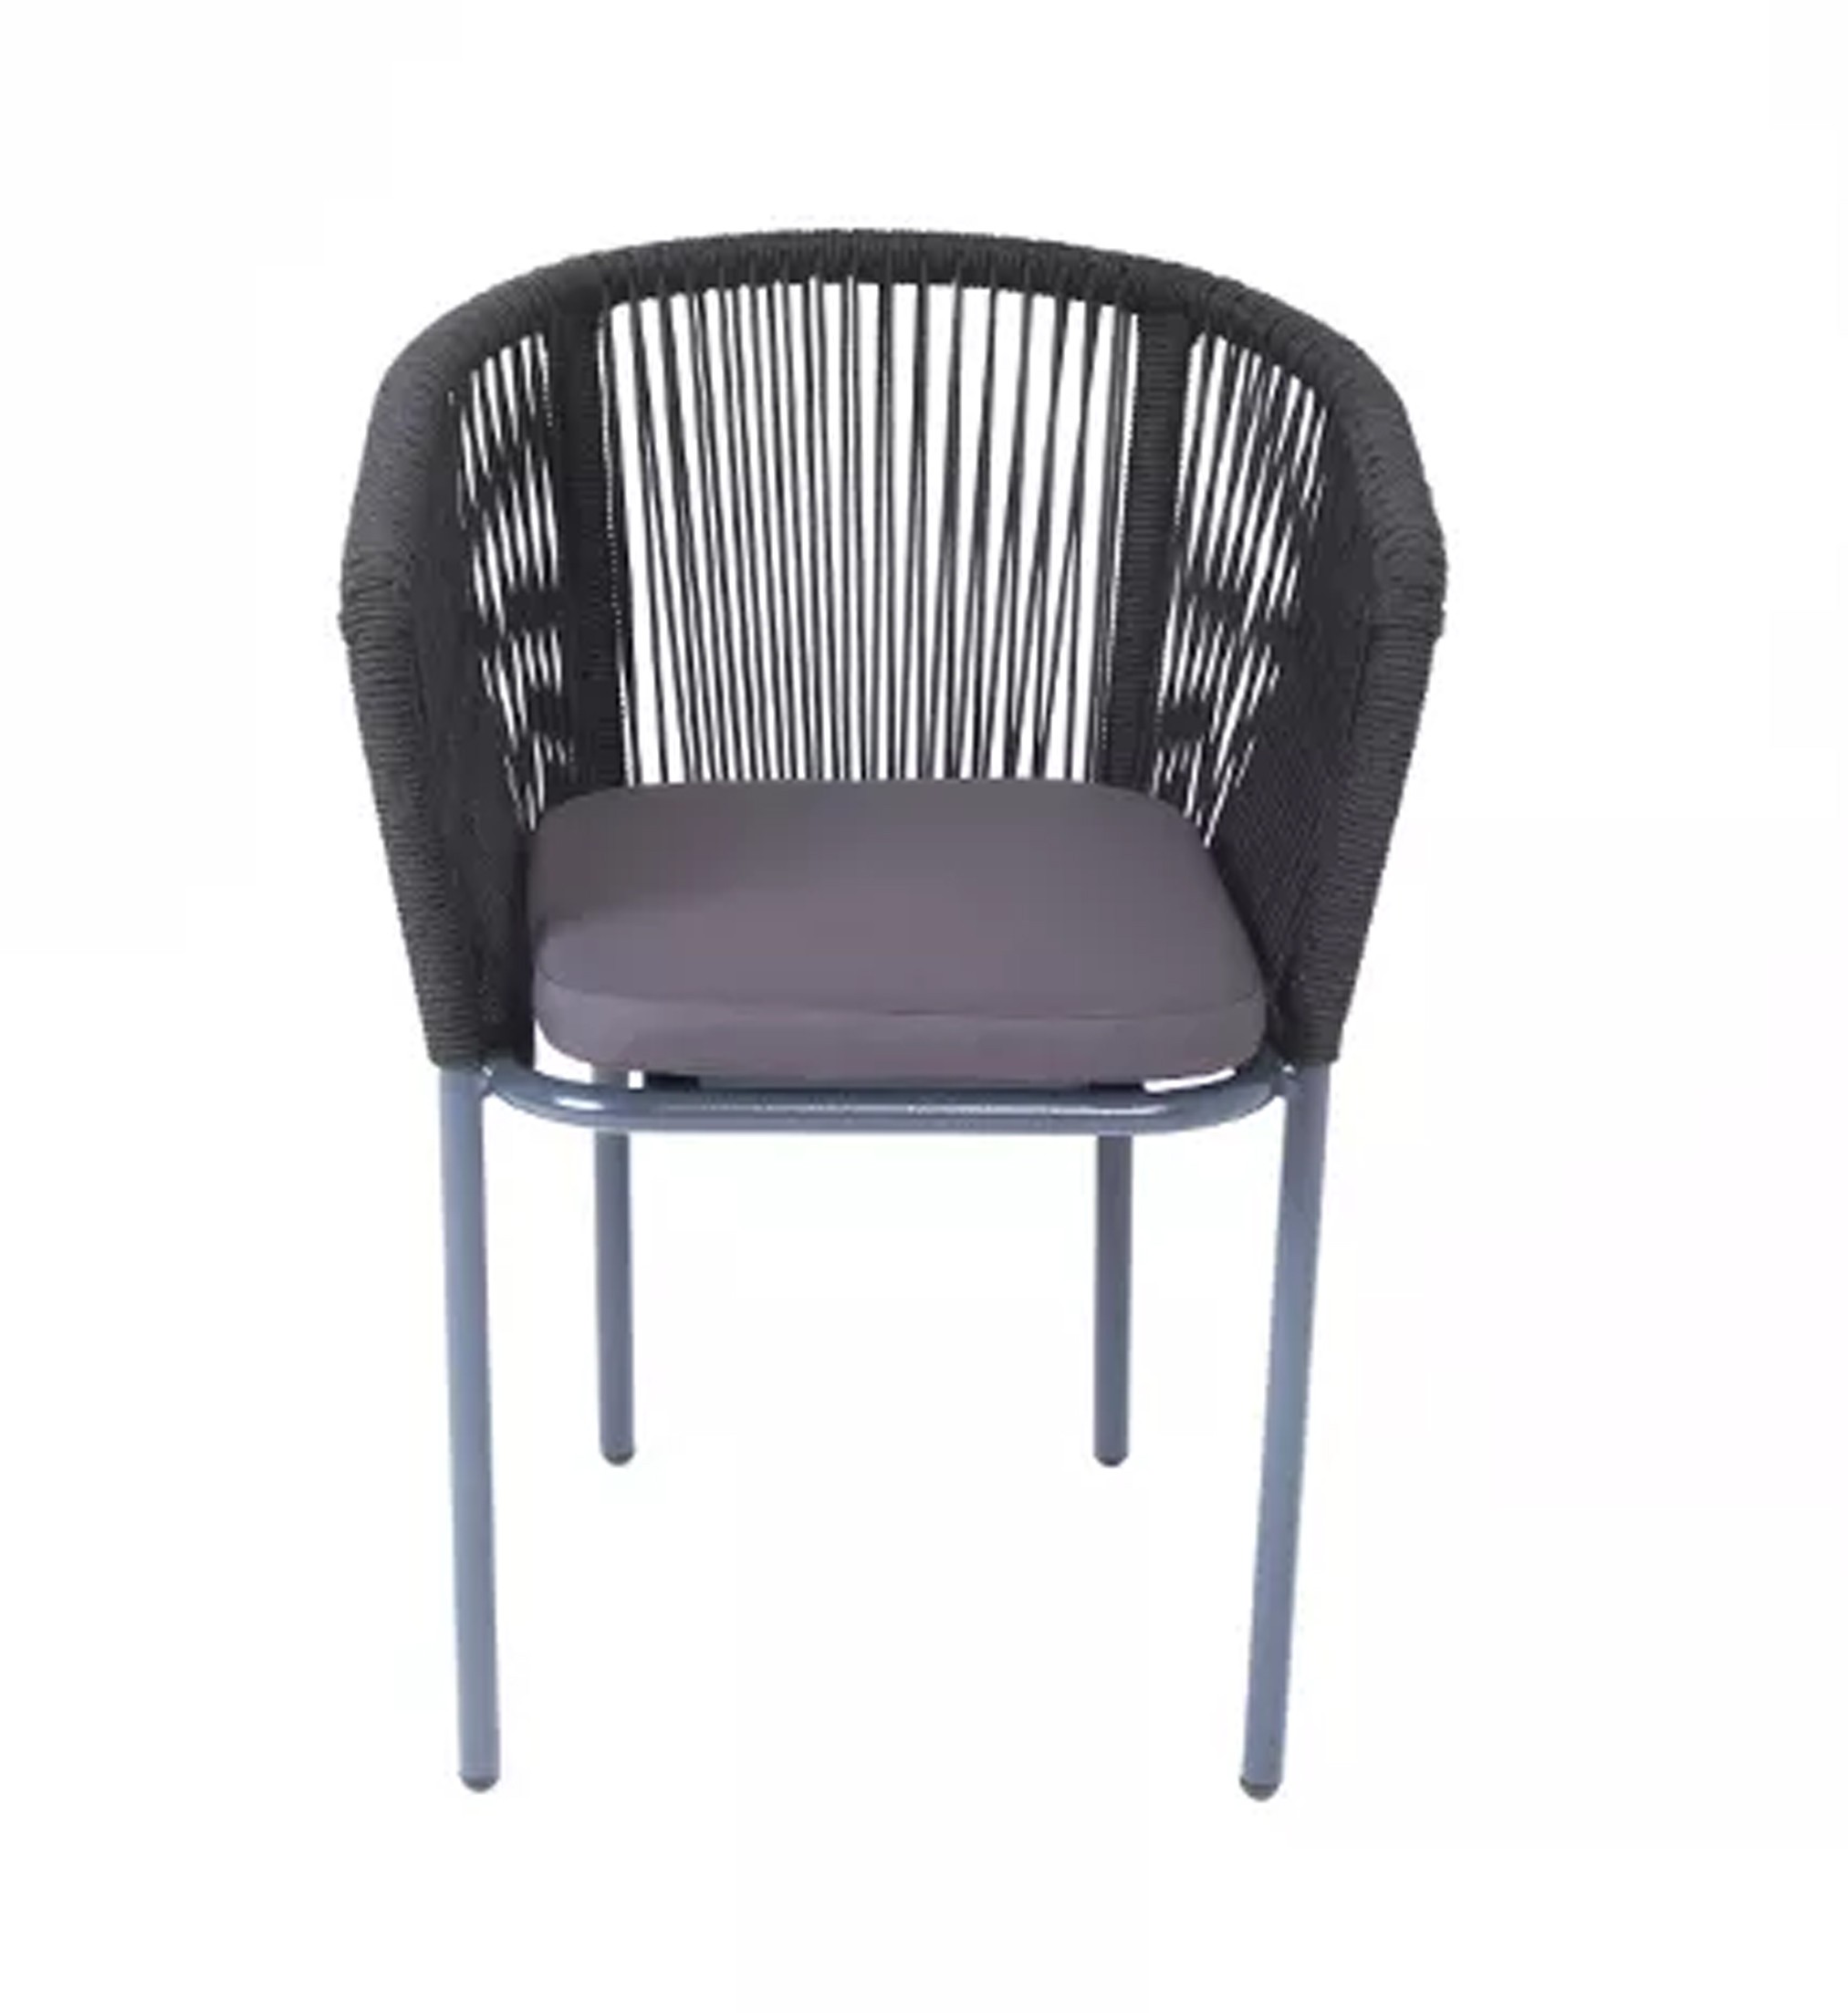 Плетеный стул из роупа (веревки) Марсель, каркас темно-серый, цвет темно-серый